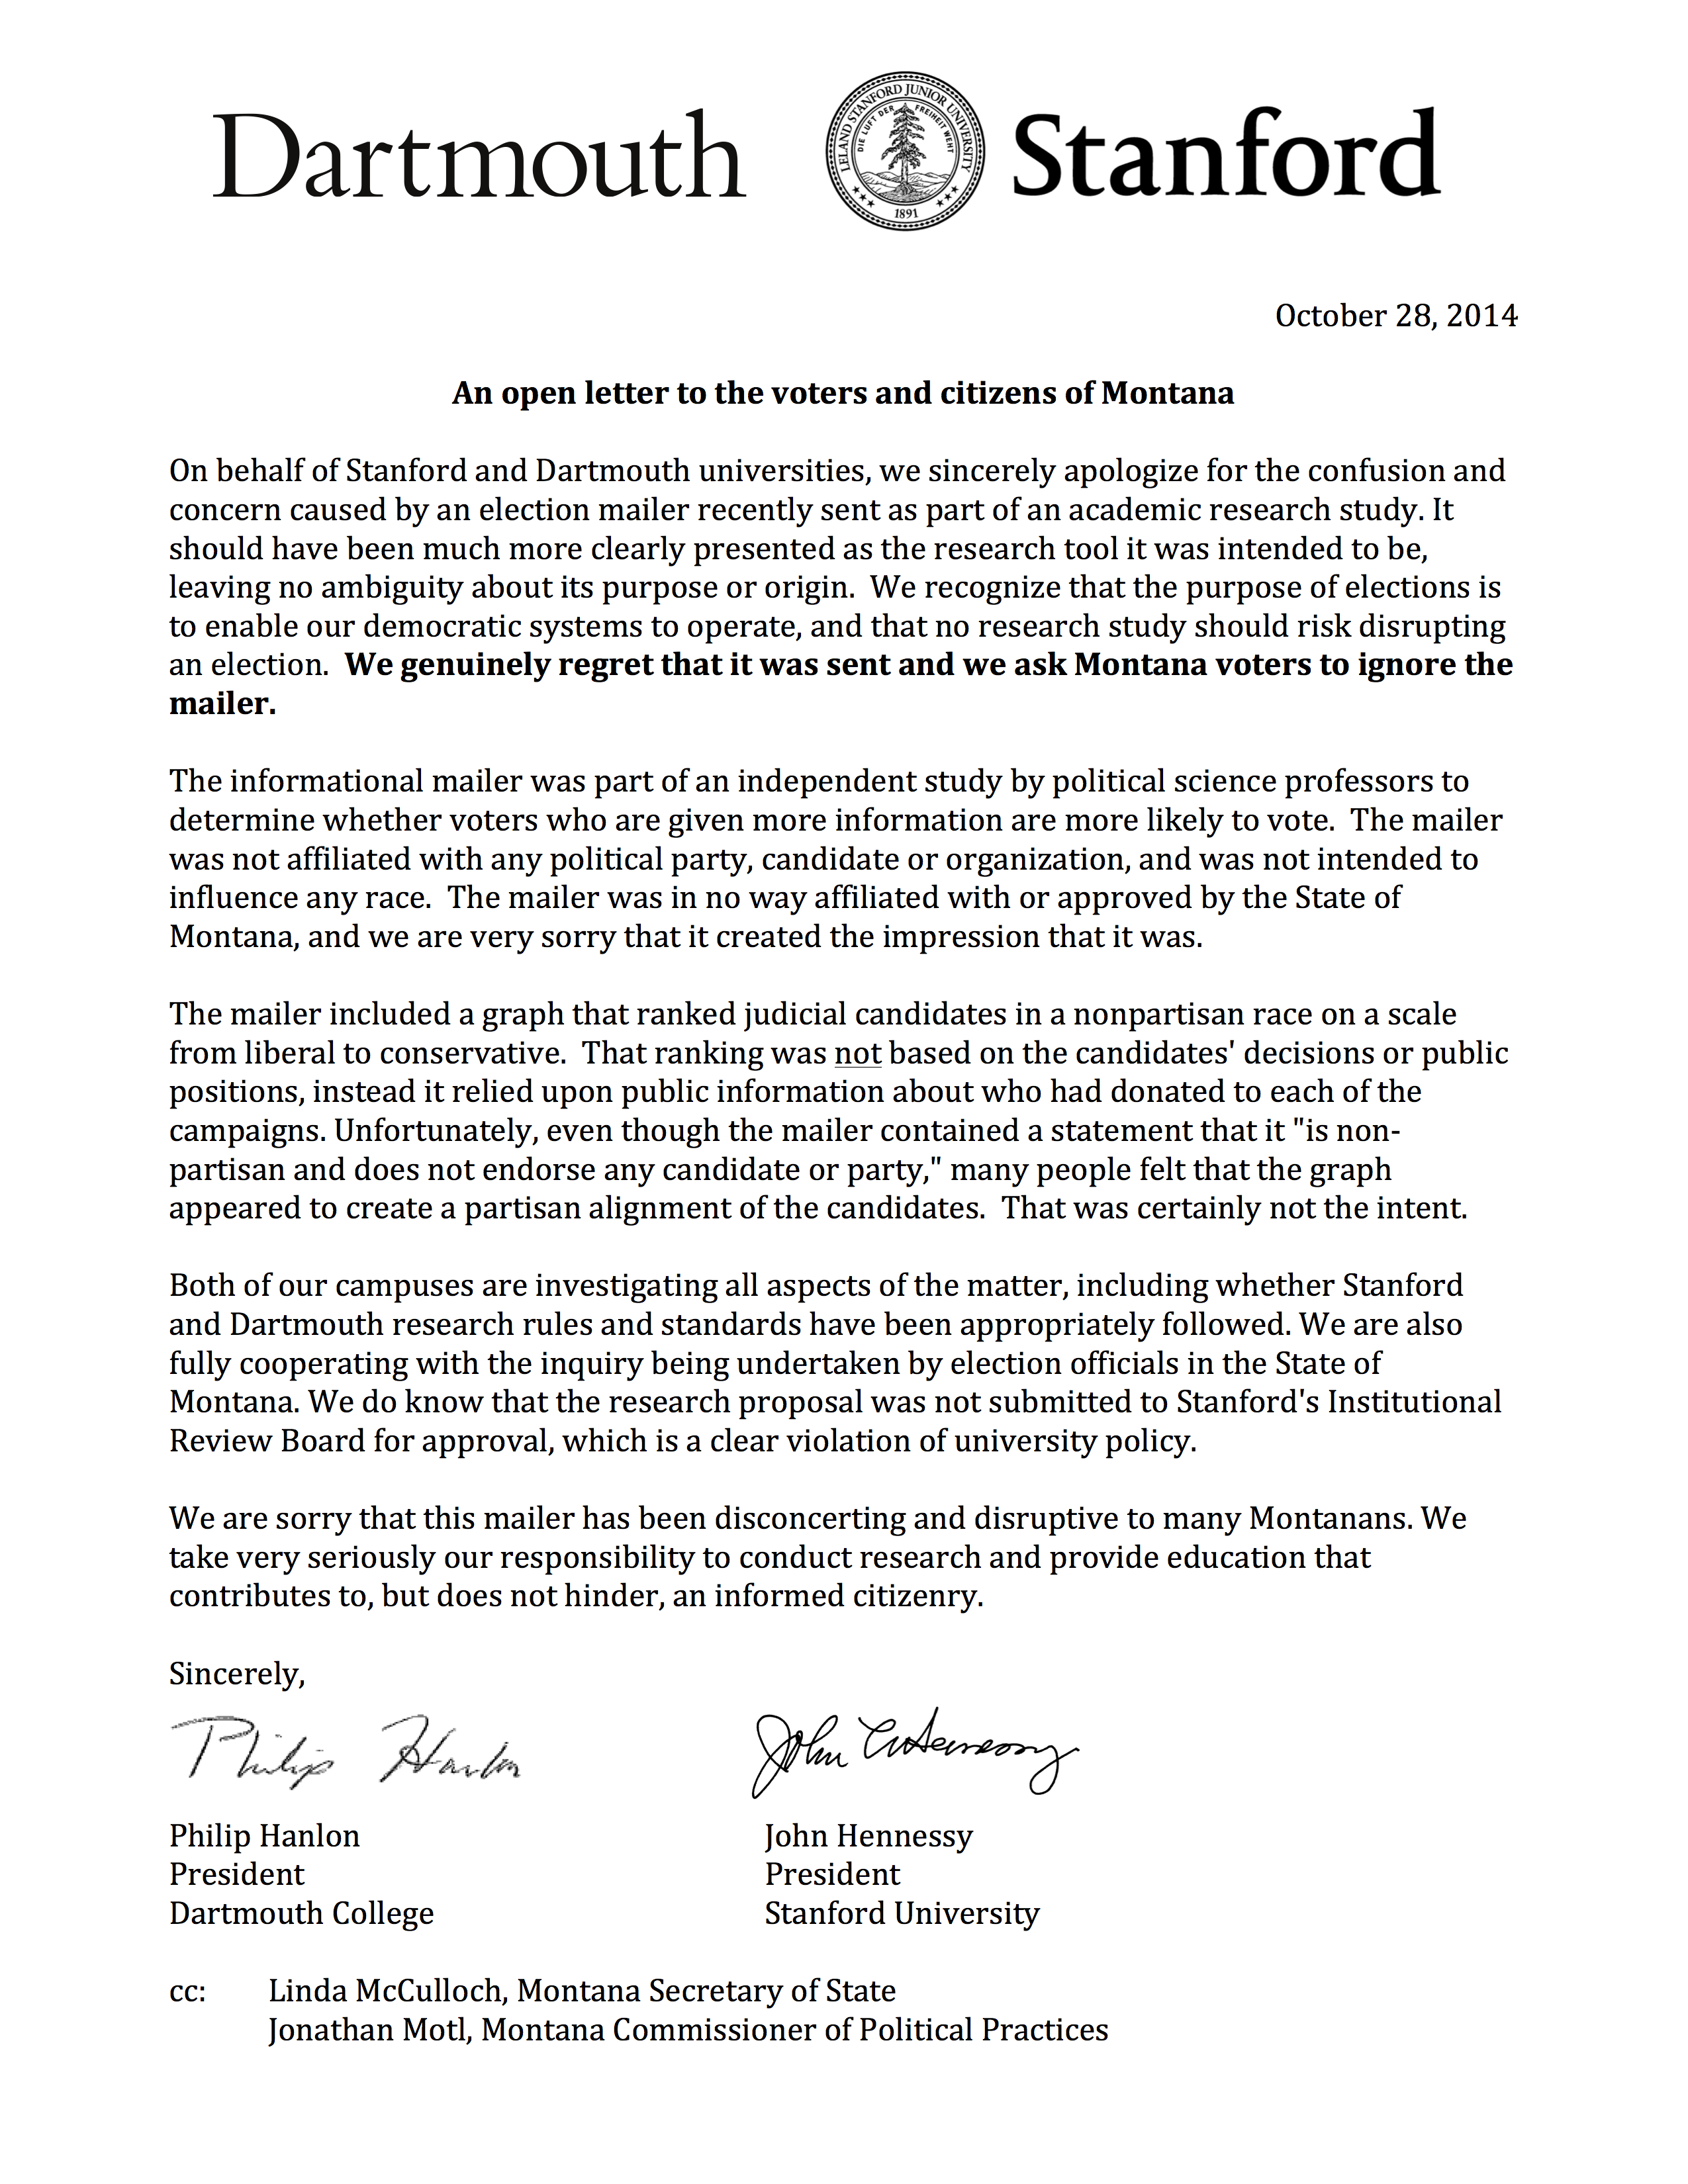 Slika 6.11: Pismo apologije koja je poslana 102.780 registriranih birača u Montani koji su primili mailer prikazan na slici 6.10. Pismo su poslali predsjednici Dartmoutha i Stanforda, sveučilišta koja su koristila istraživače koji su poslali mailera. Reproducira se iz Motl (2015).